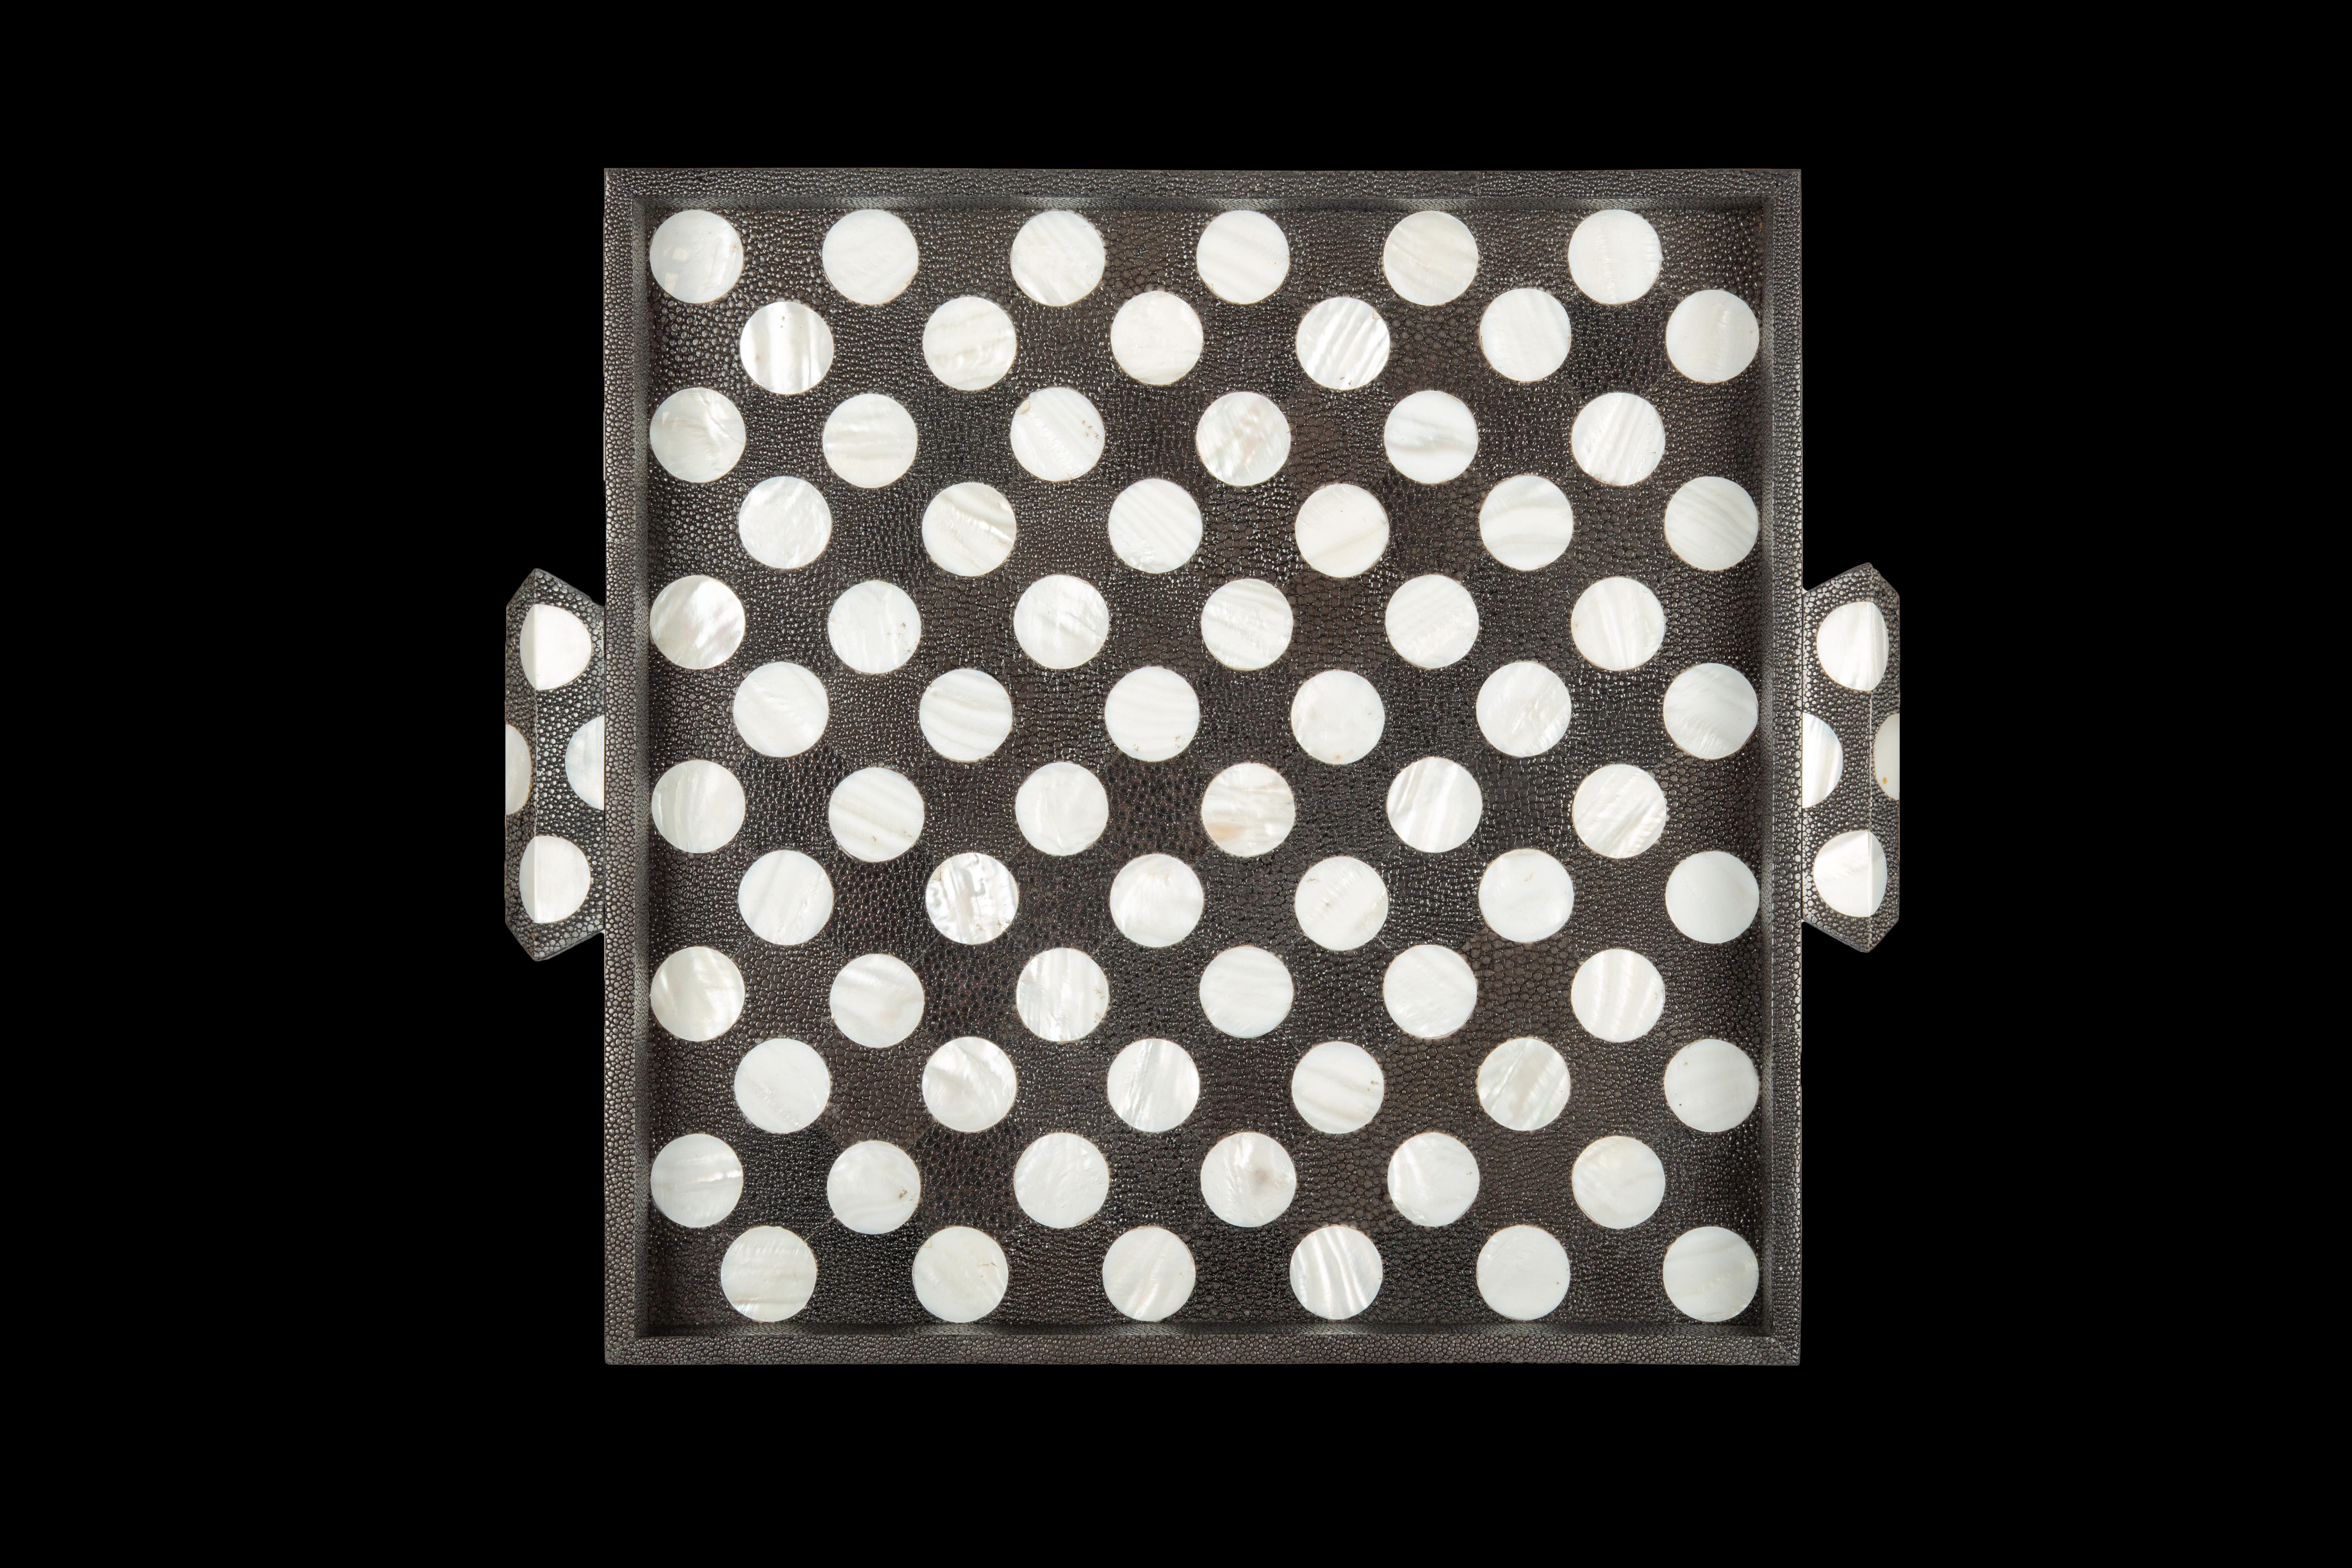 Quadratisches Tablett mit schwarzem und weißem Polka Dot Shagreen und Perlmutt

Maße: 12